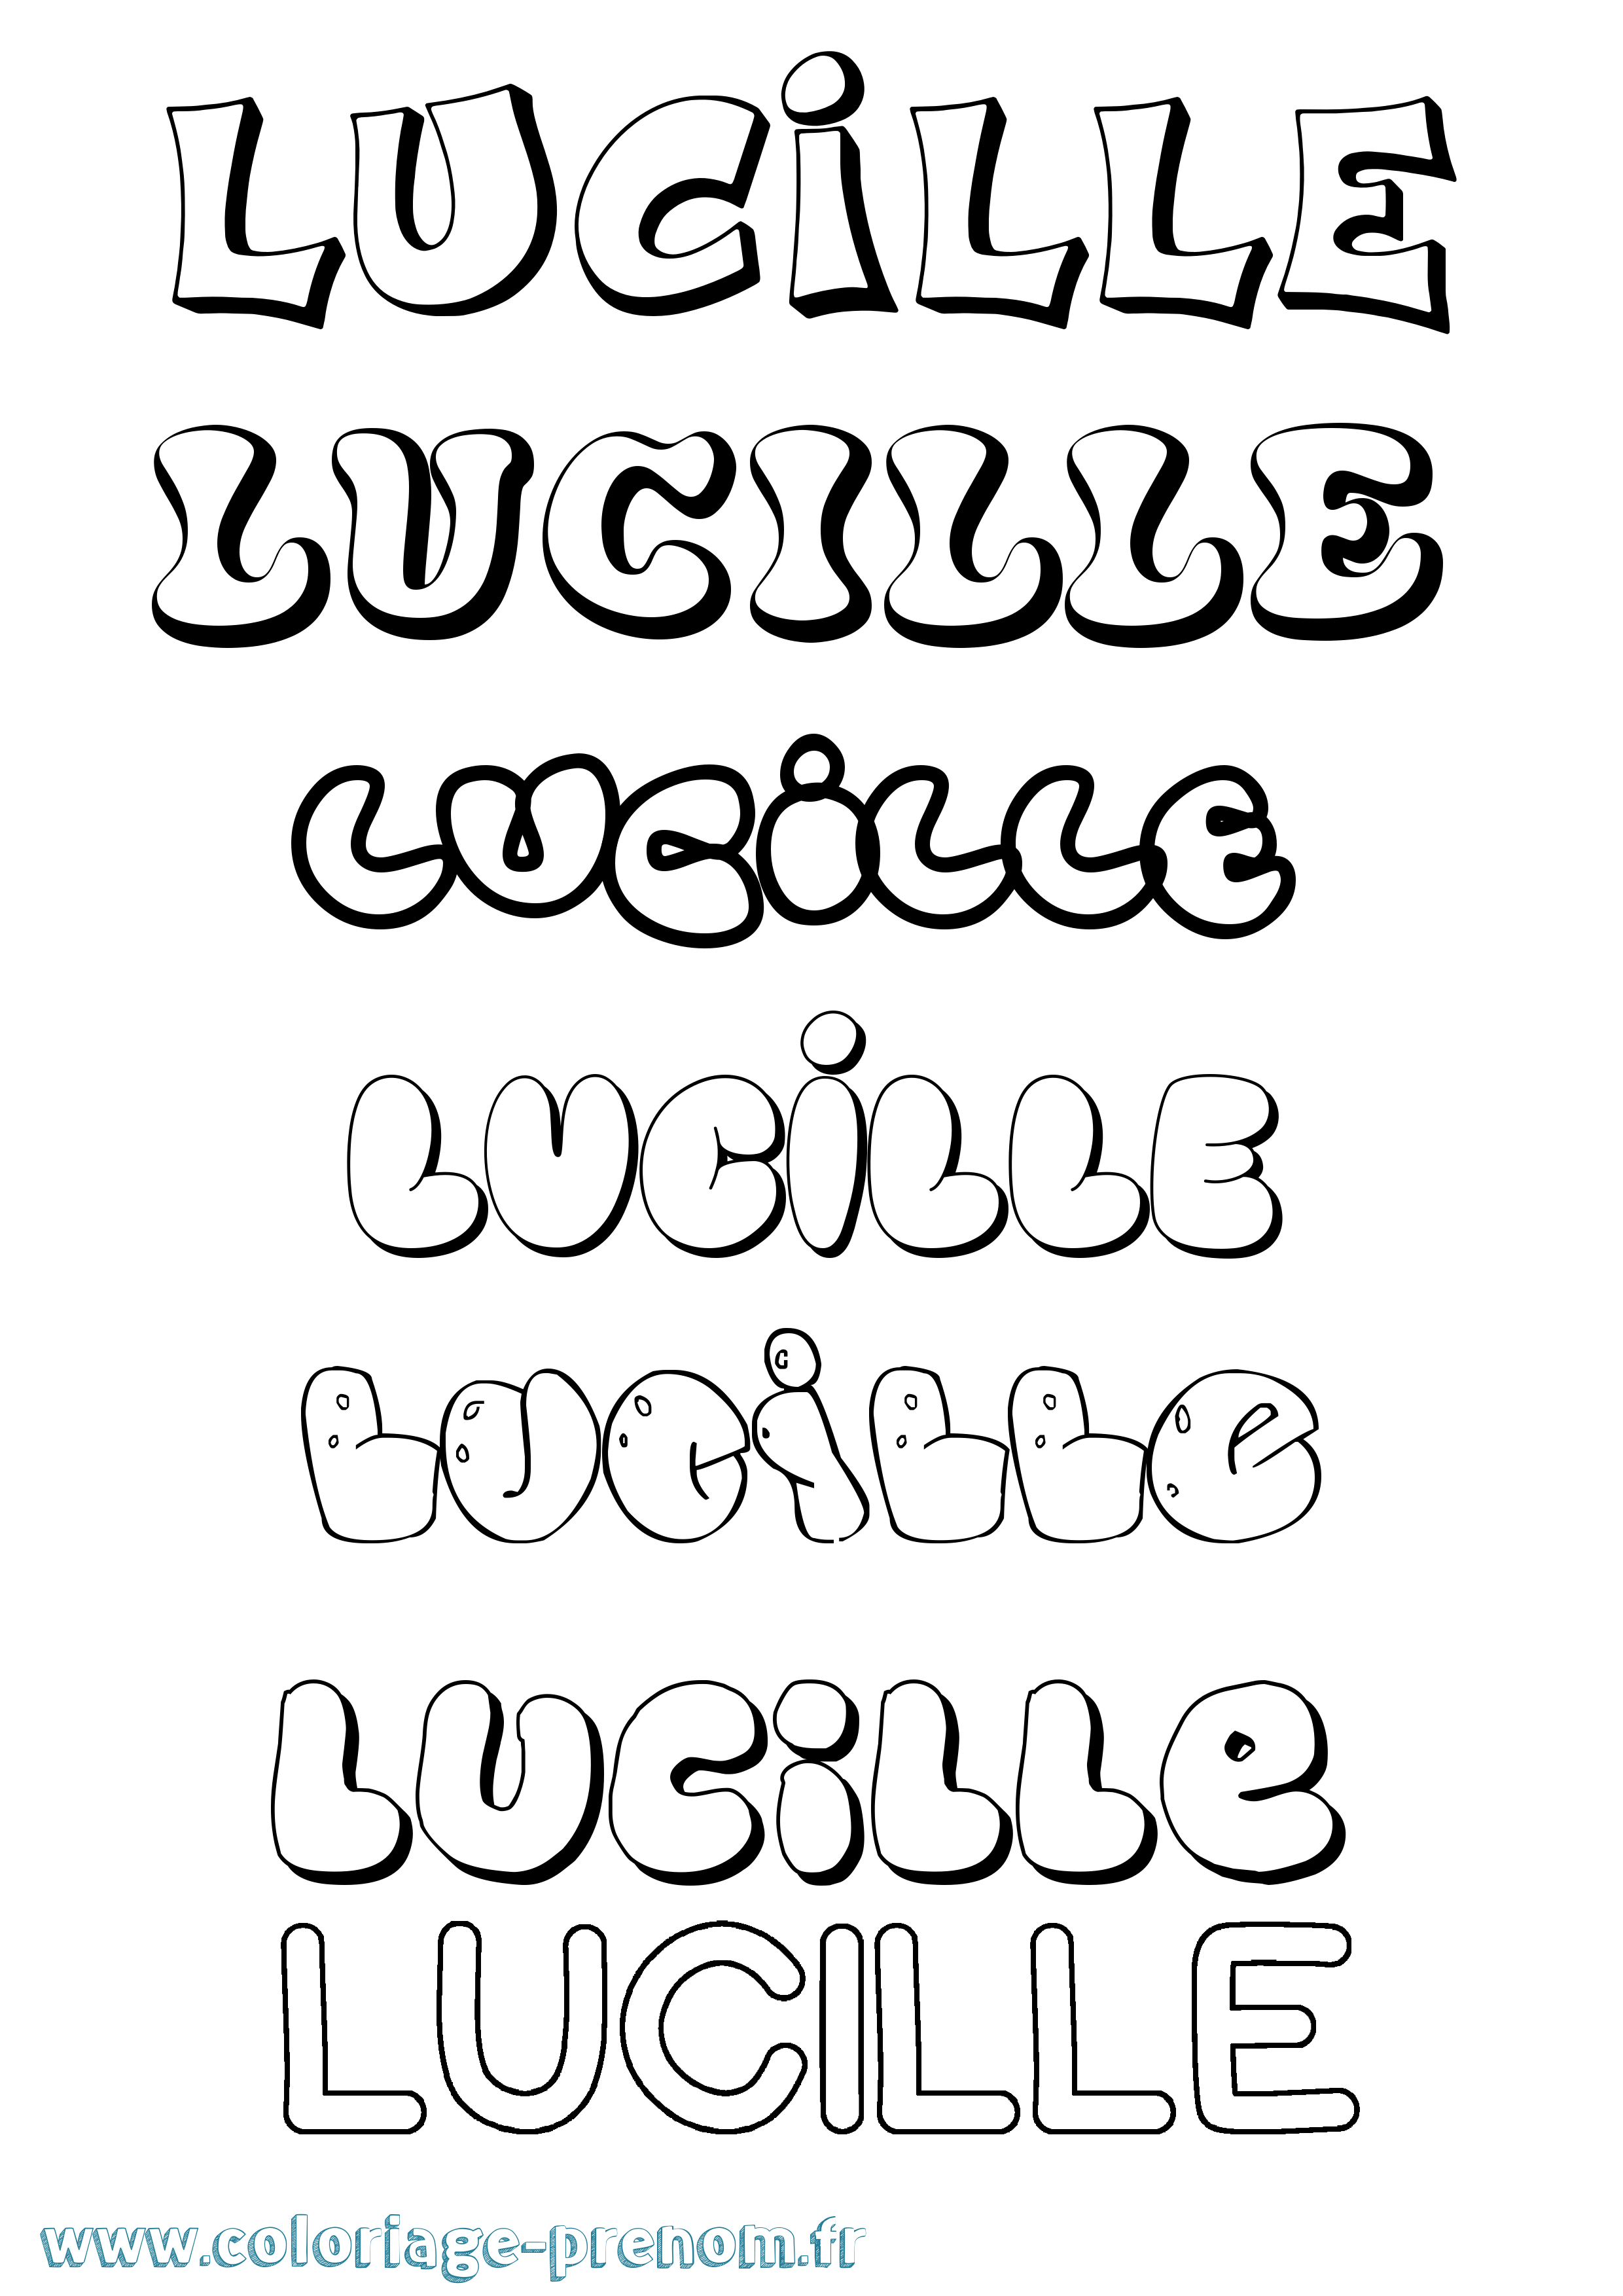 Coloriage prénom Lucille Bubble